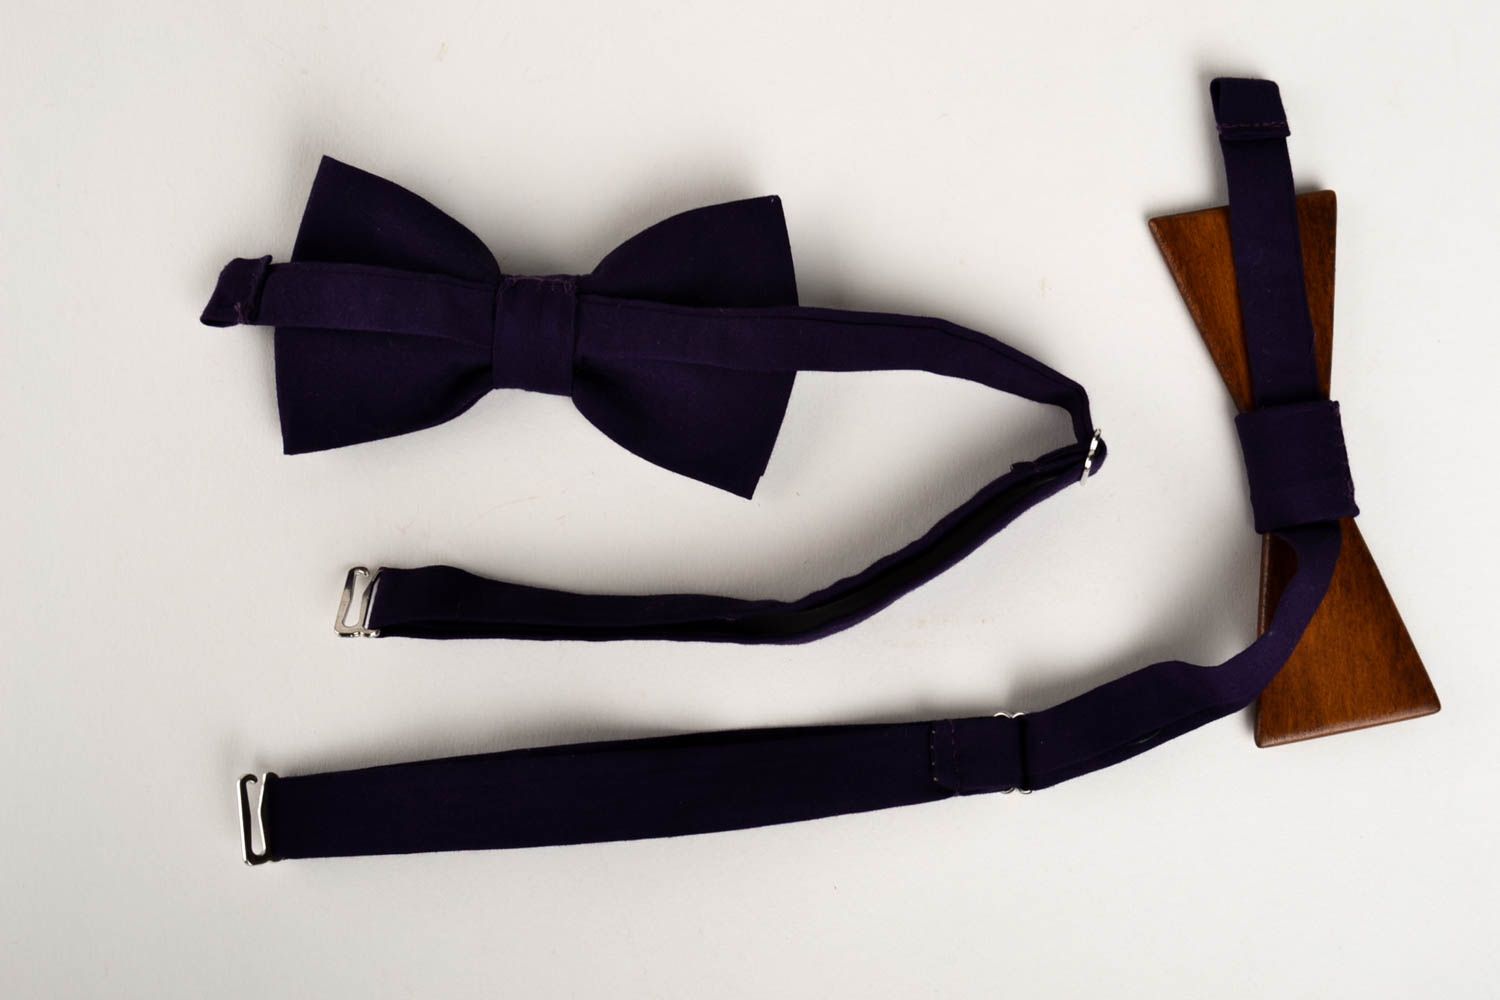 Handmade stylish bow tie wooden bow tie men accessories present for boyfriend photo 2